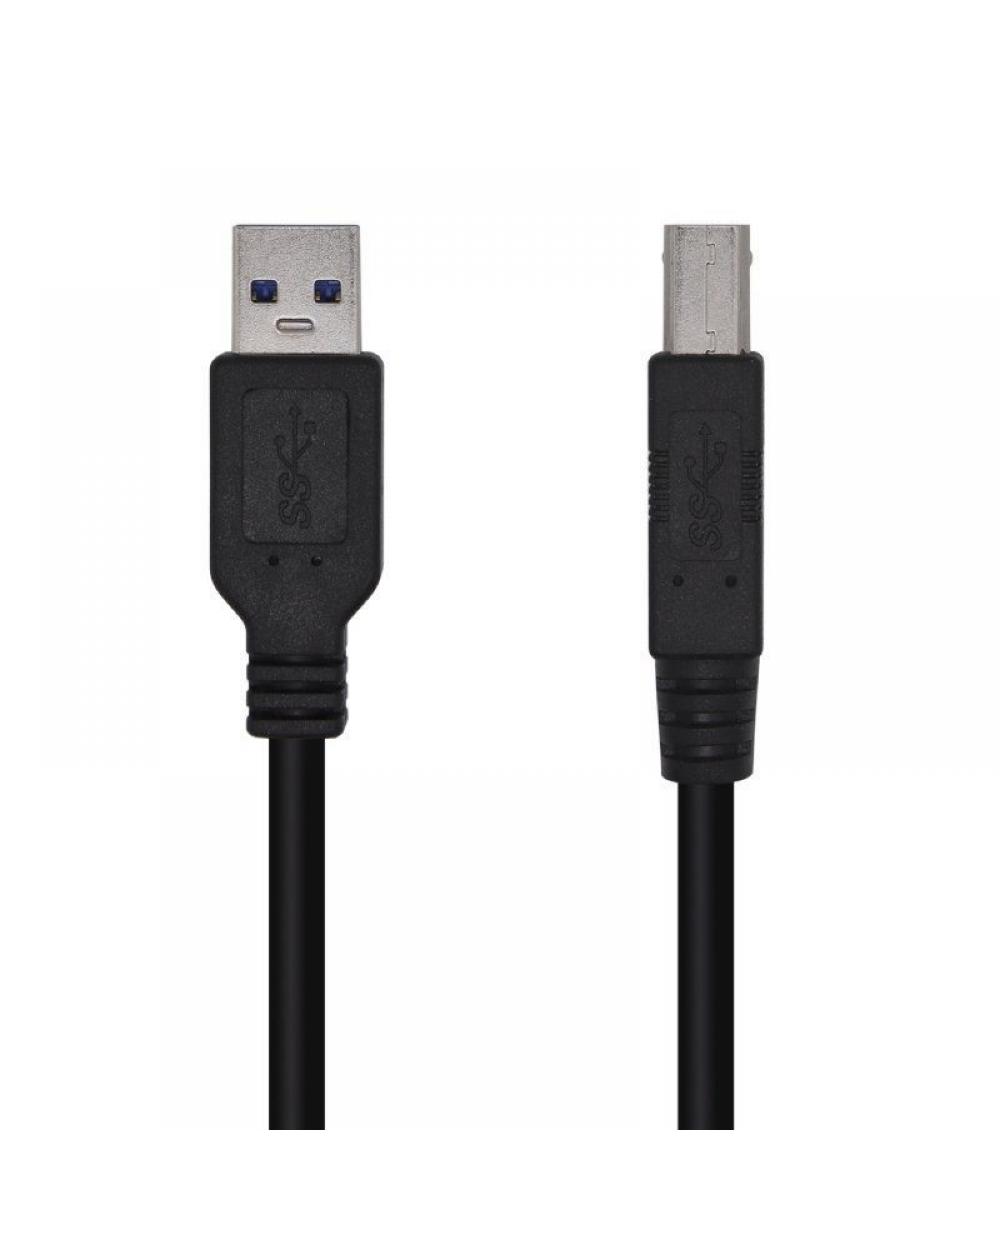 Cable USB 3.0 Impresora Aisens A105-0445/ USB Macho - USB Macho/ 3m/ Negro - Imagen 1